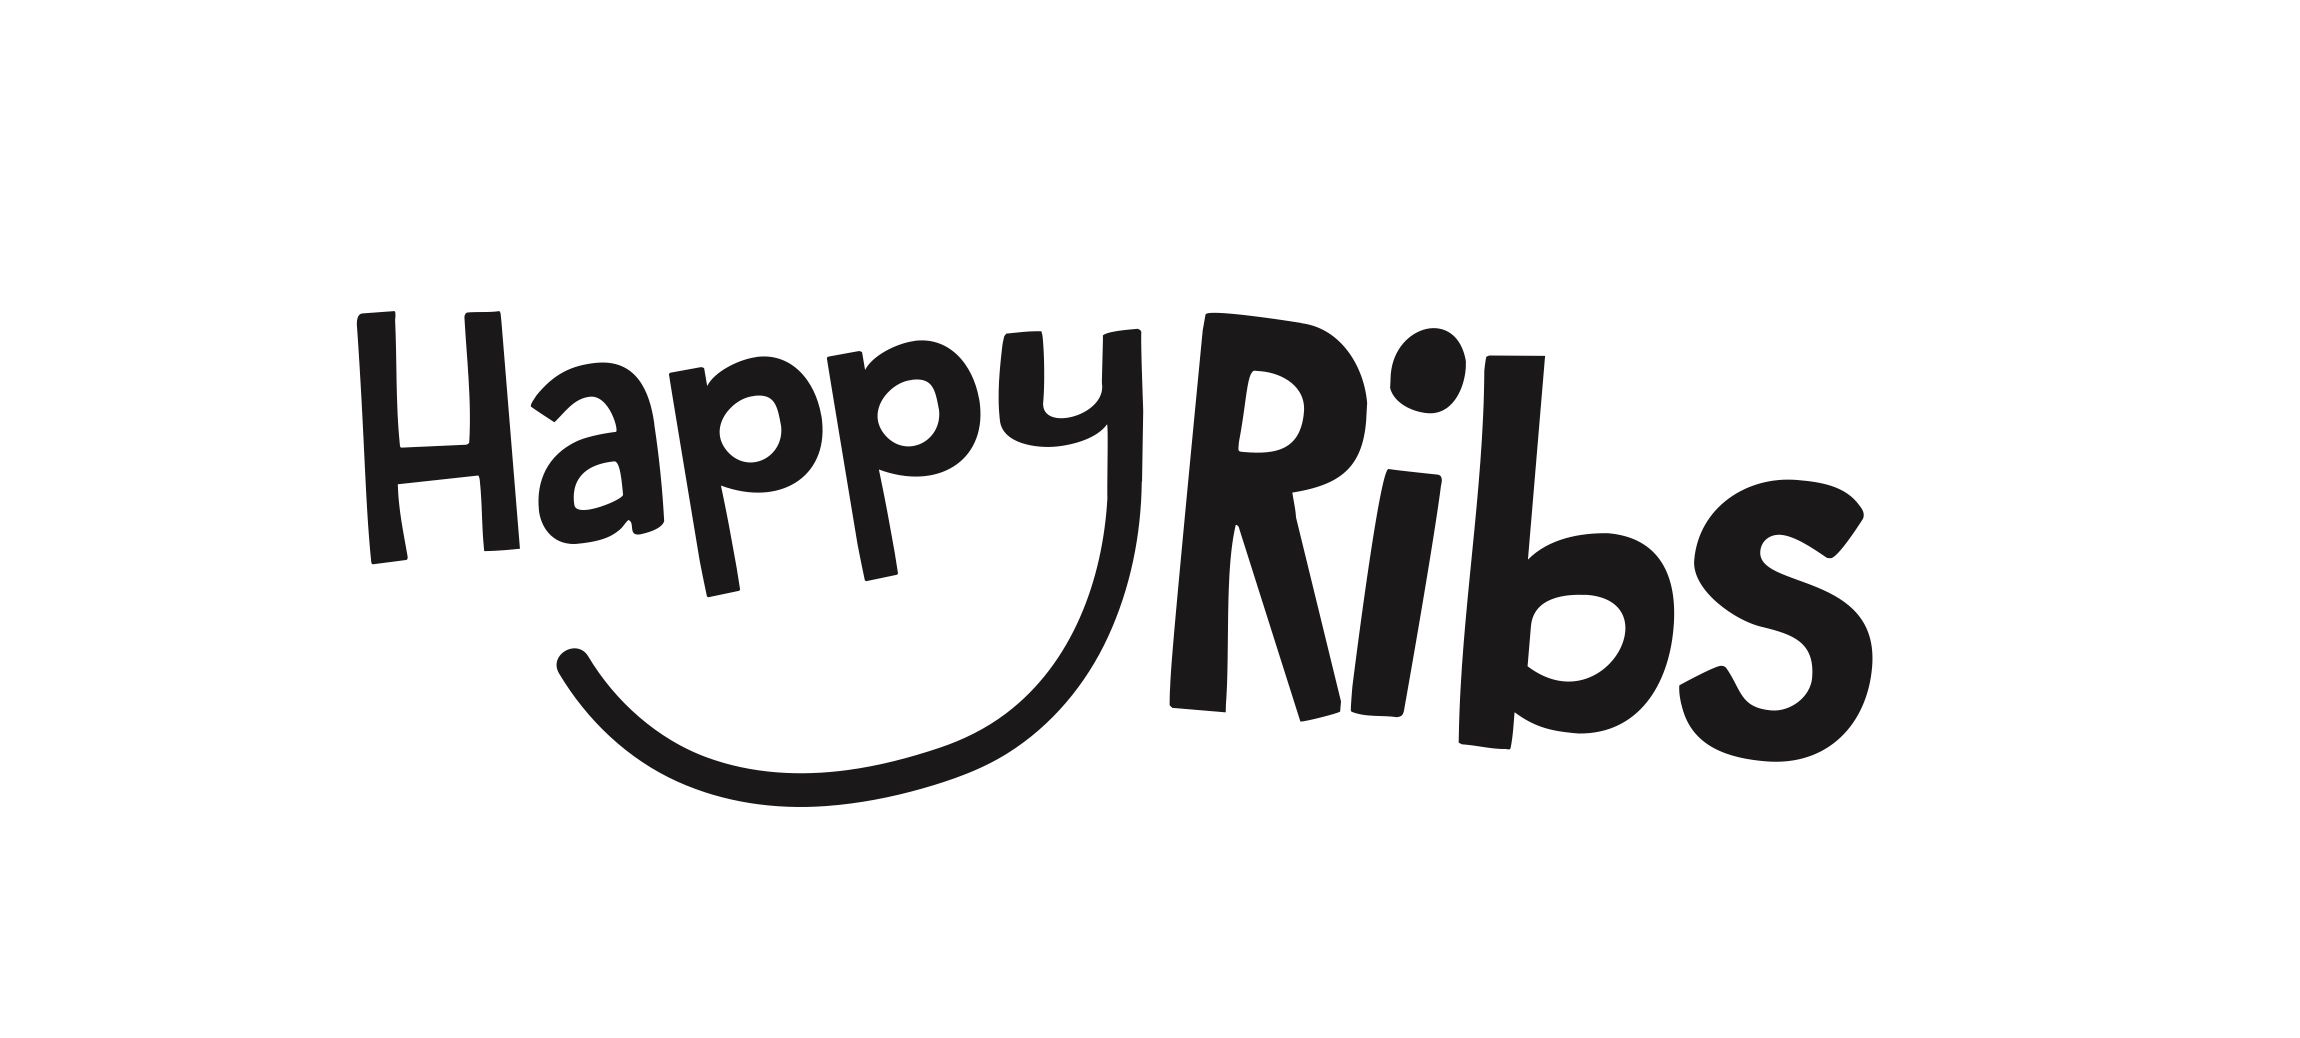 Feedback | happy ribs